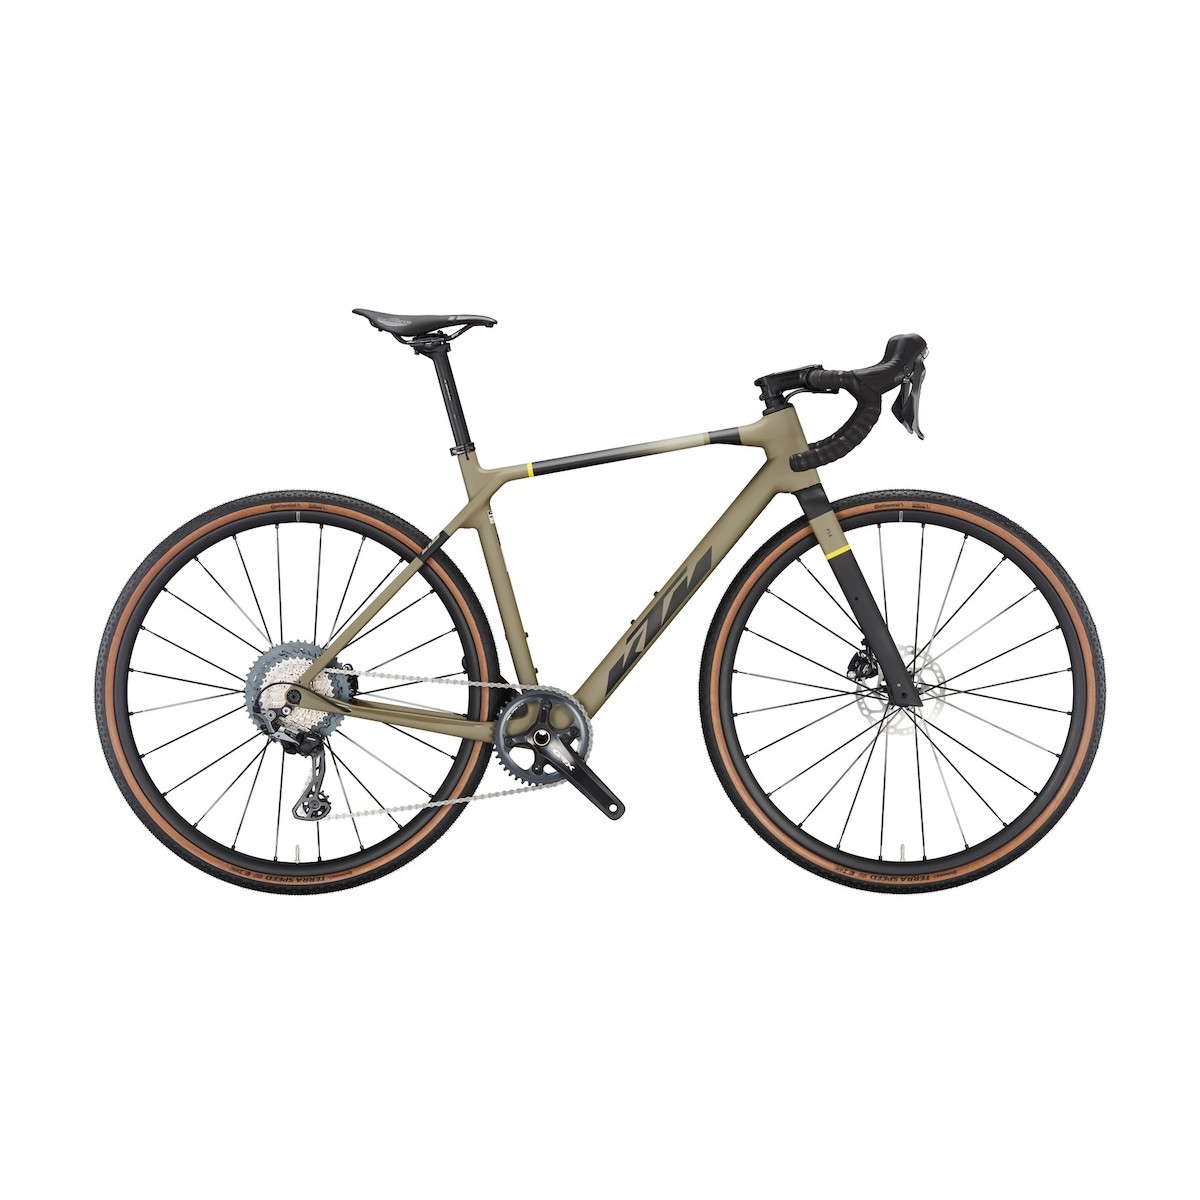 KTM X-STRADA ELITE gravel bicycle - olive/black - 2023